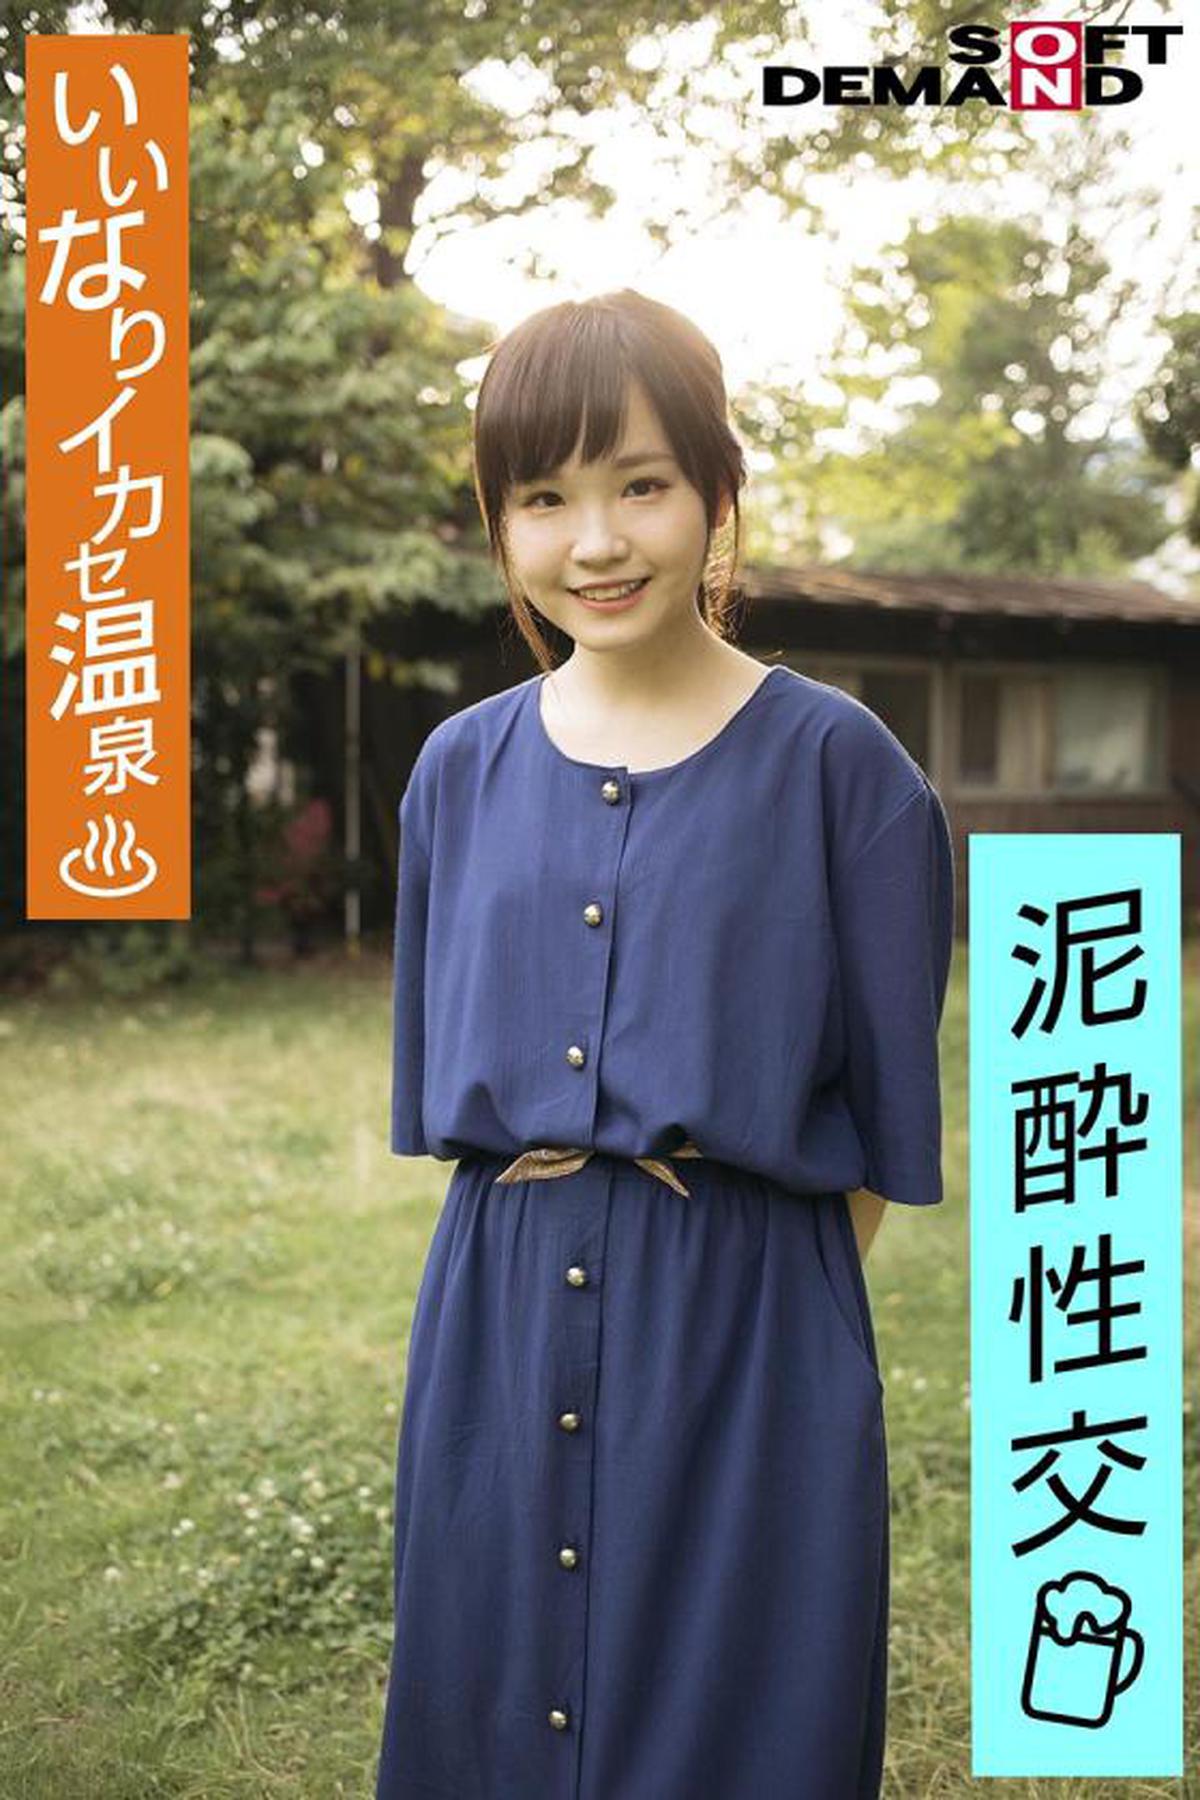 107EMOI-030 Chica emo / Ikase Onsen obediente / Sexo borracho / Nyotaimori / Sake / Altura baja 142cm / Dialecto Osaka / Haru-chan (20) Haru Ito